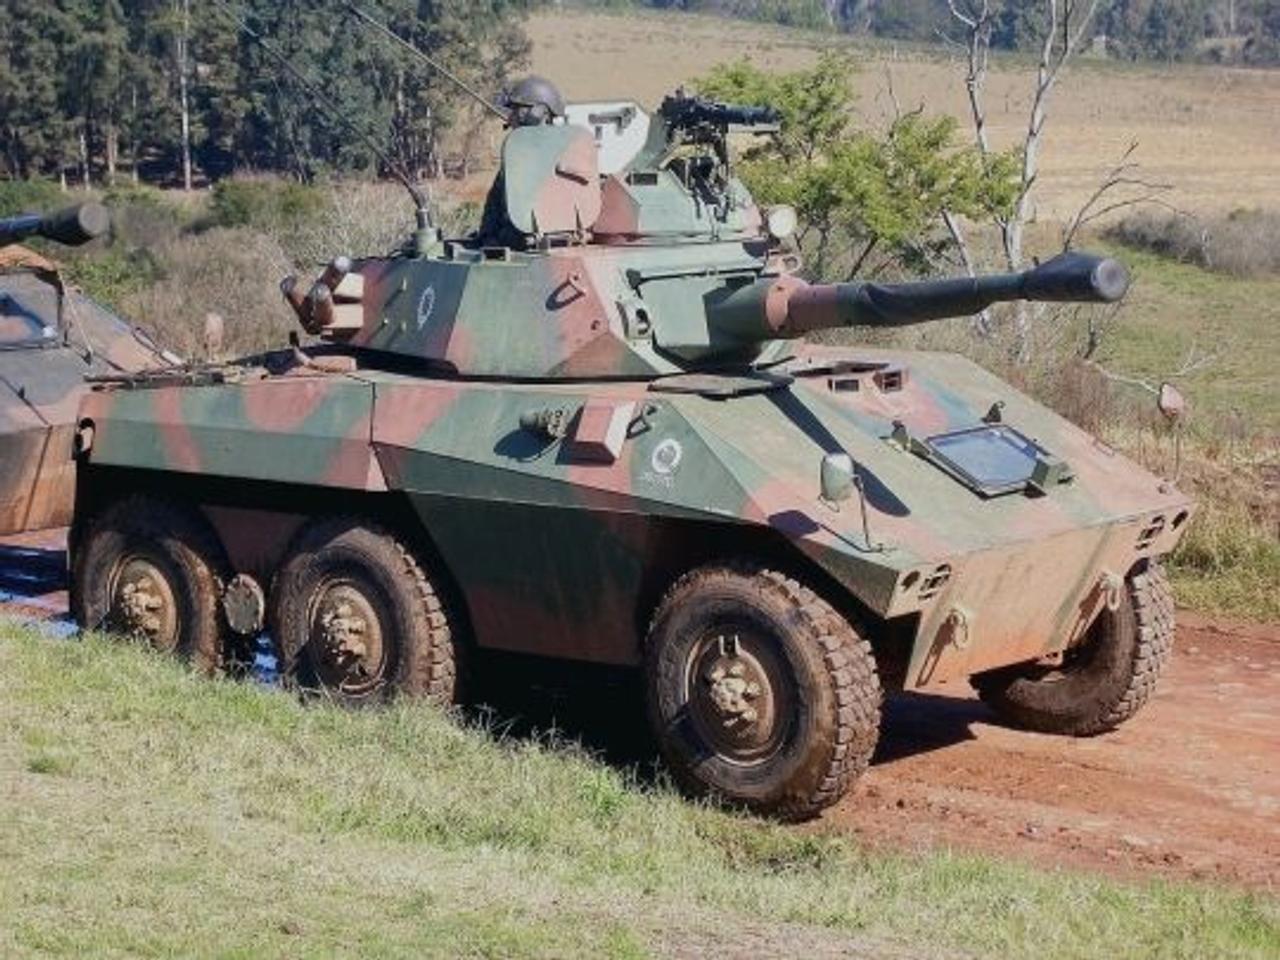 Бразильская колёсная боевая разведывательная машина Cascavel используется как для бронеразведки, так и борьбы с танками противника